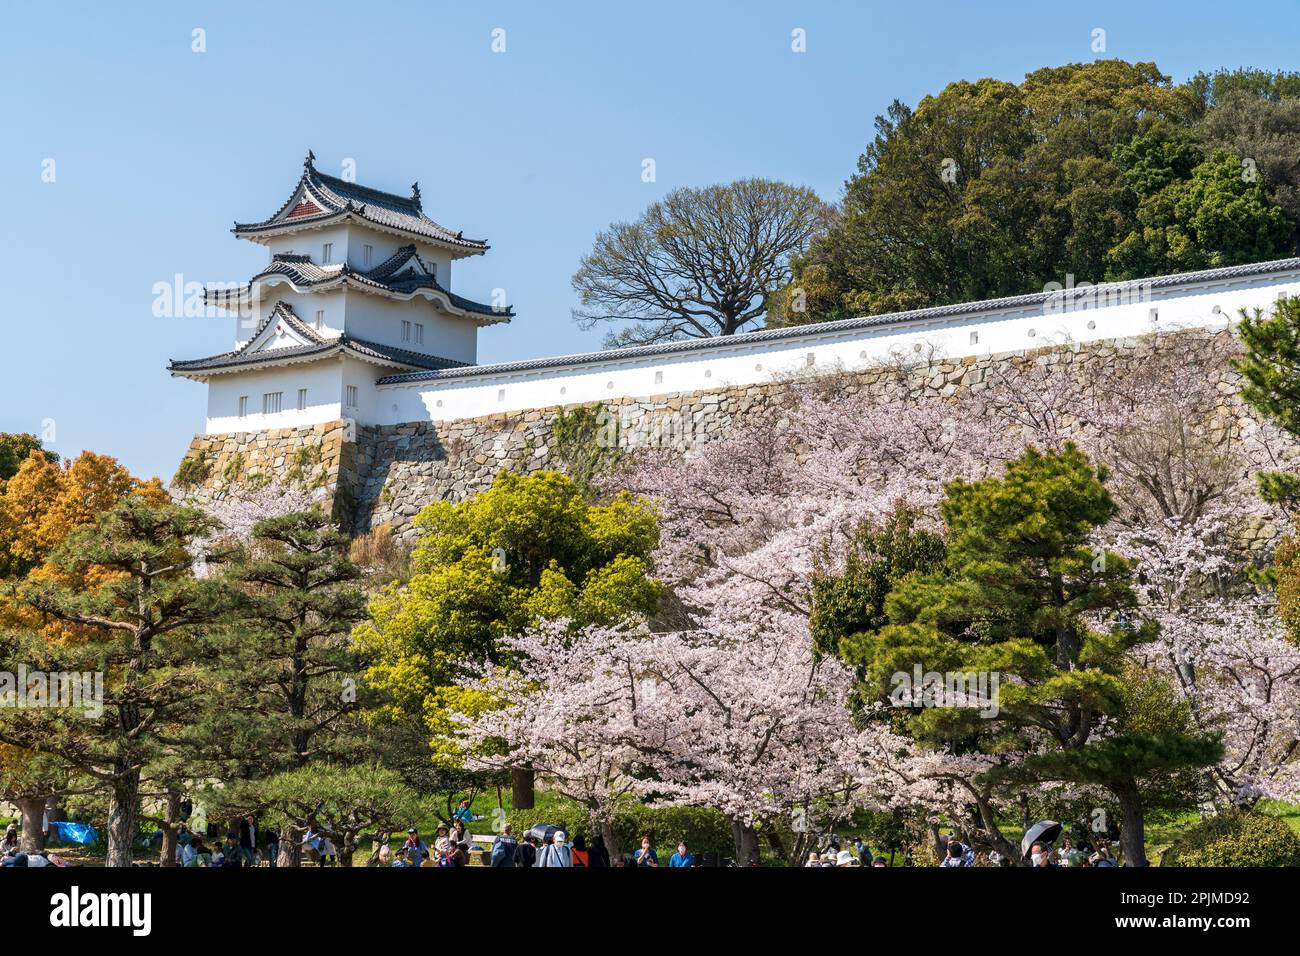 Le Hitsugisaru yagura, tourelle, l'une des deux, au château d'Akashi au Japon au printemps avec des cerisiers en fleurs en pleine floraison. Fond bleu clair du ciel. Banque D'Images